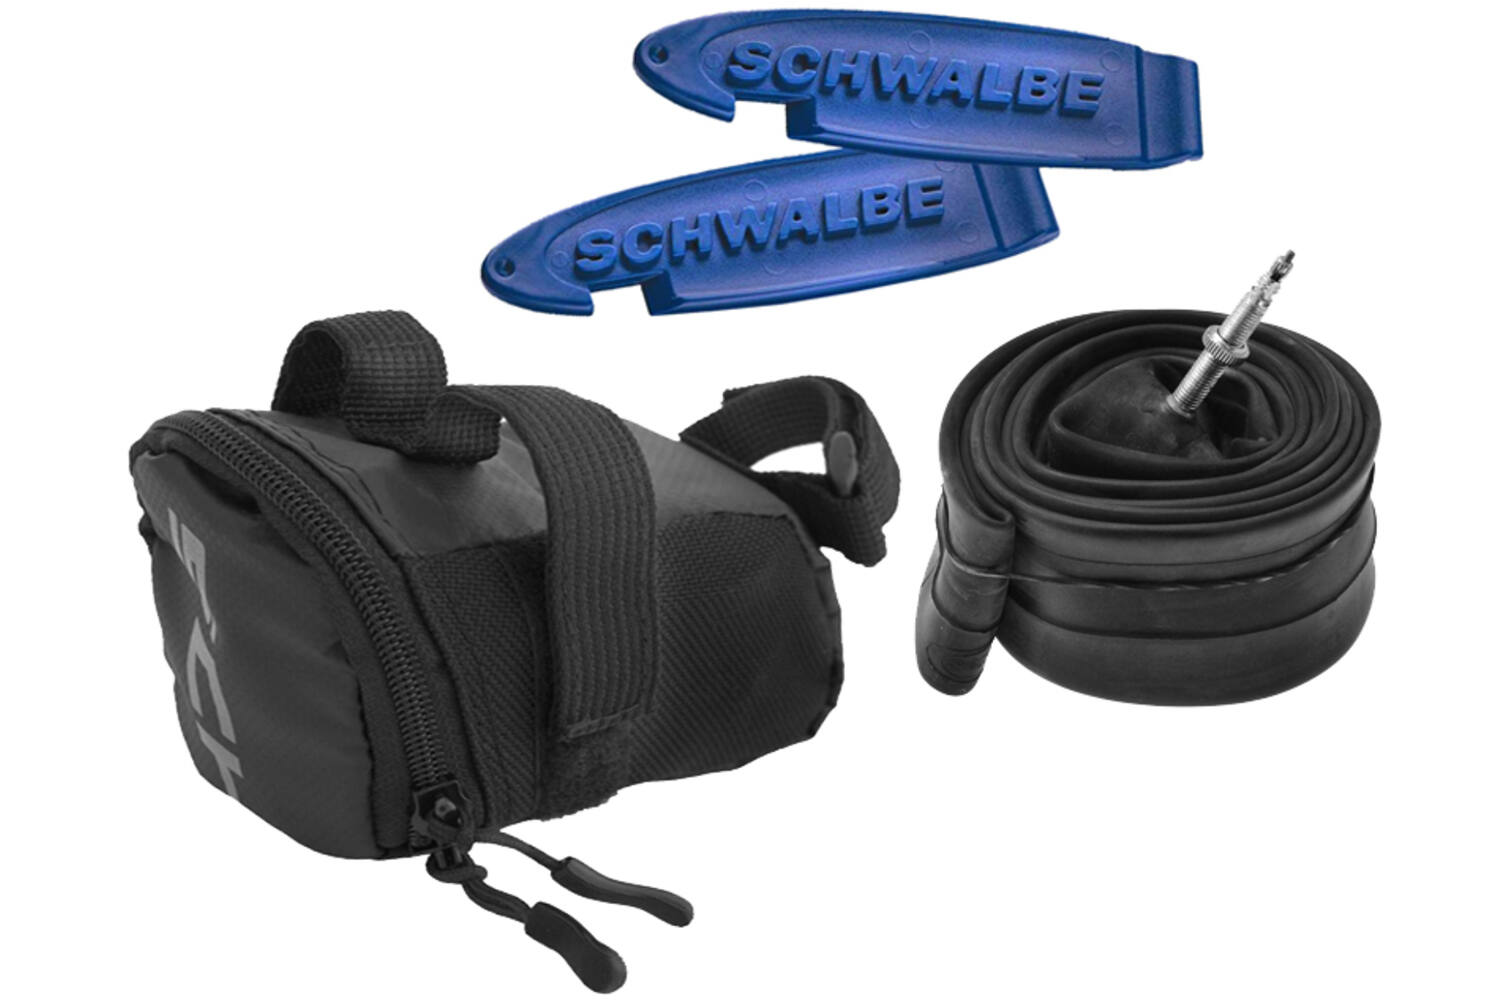 saddle bag 0.7 liter with inner tube 26 x 1.75 black